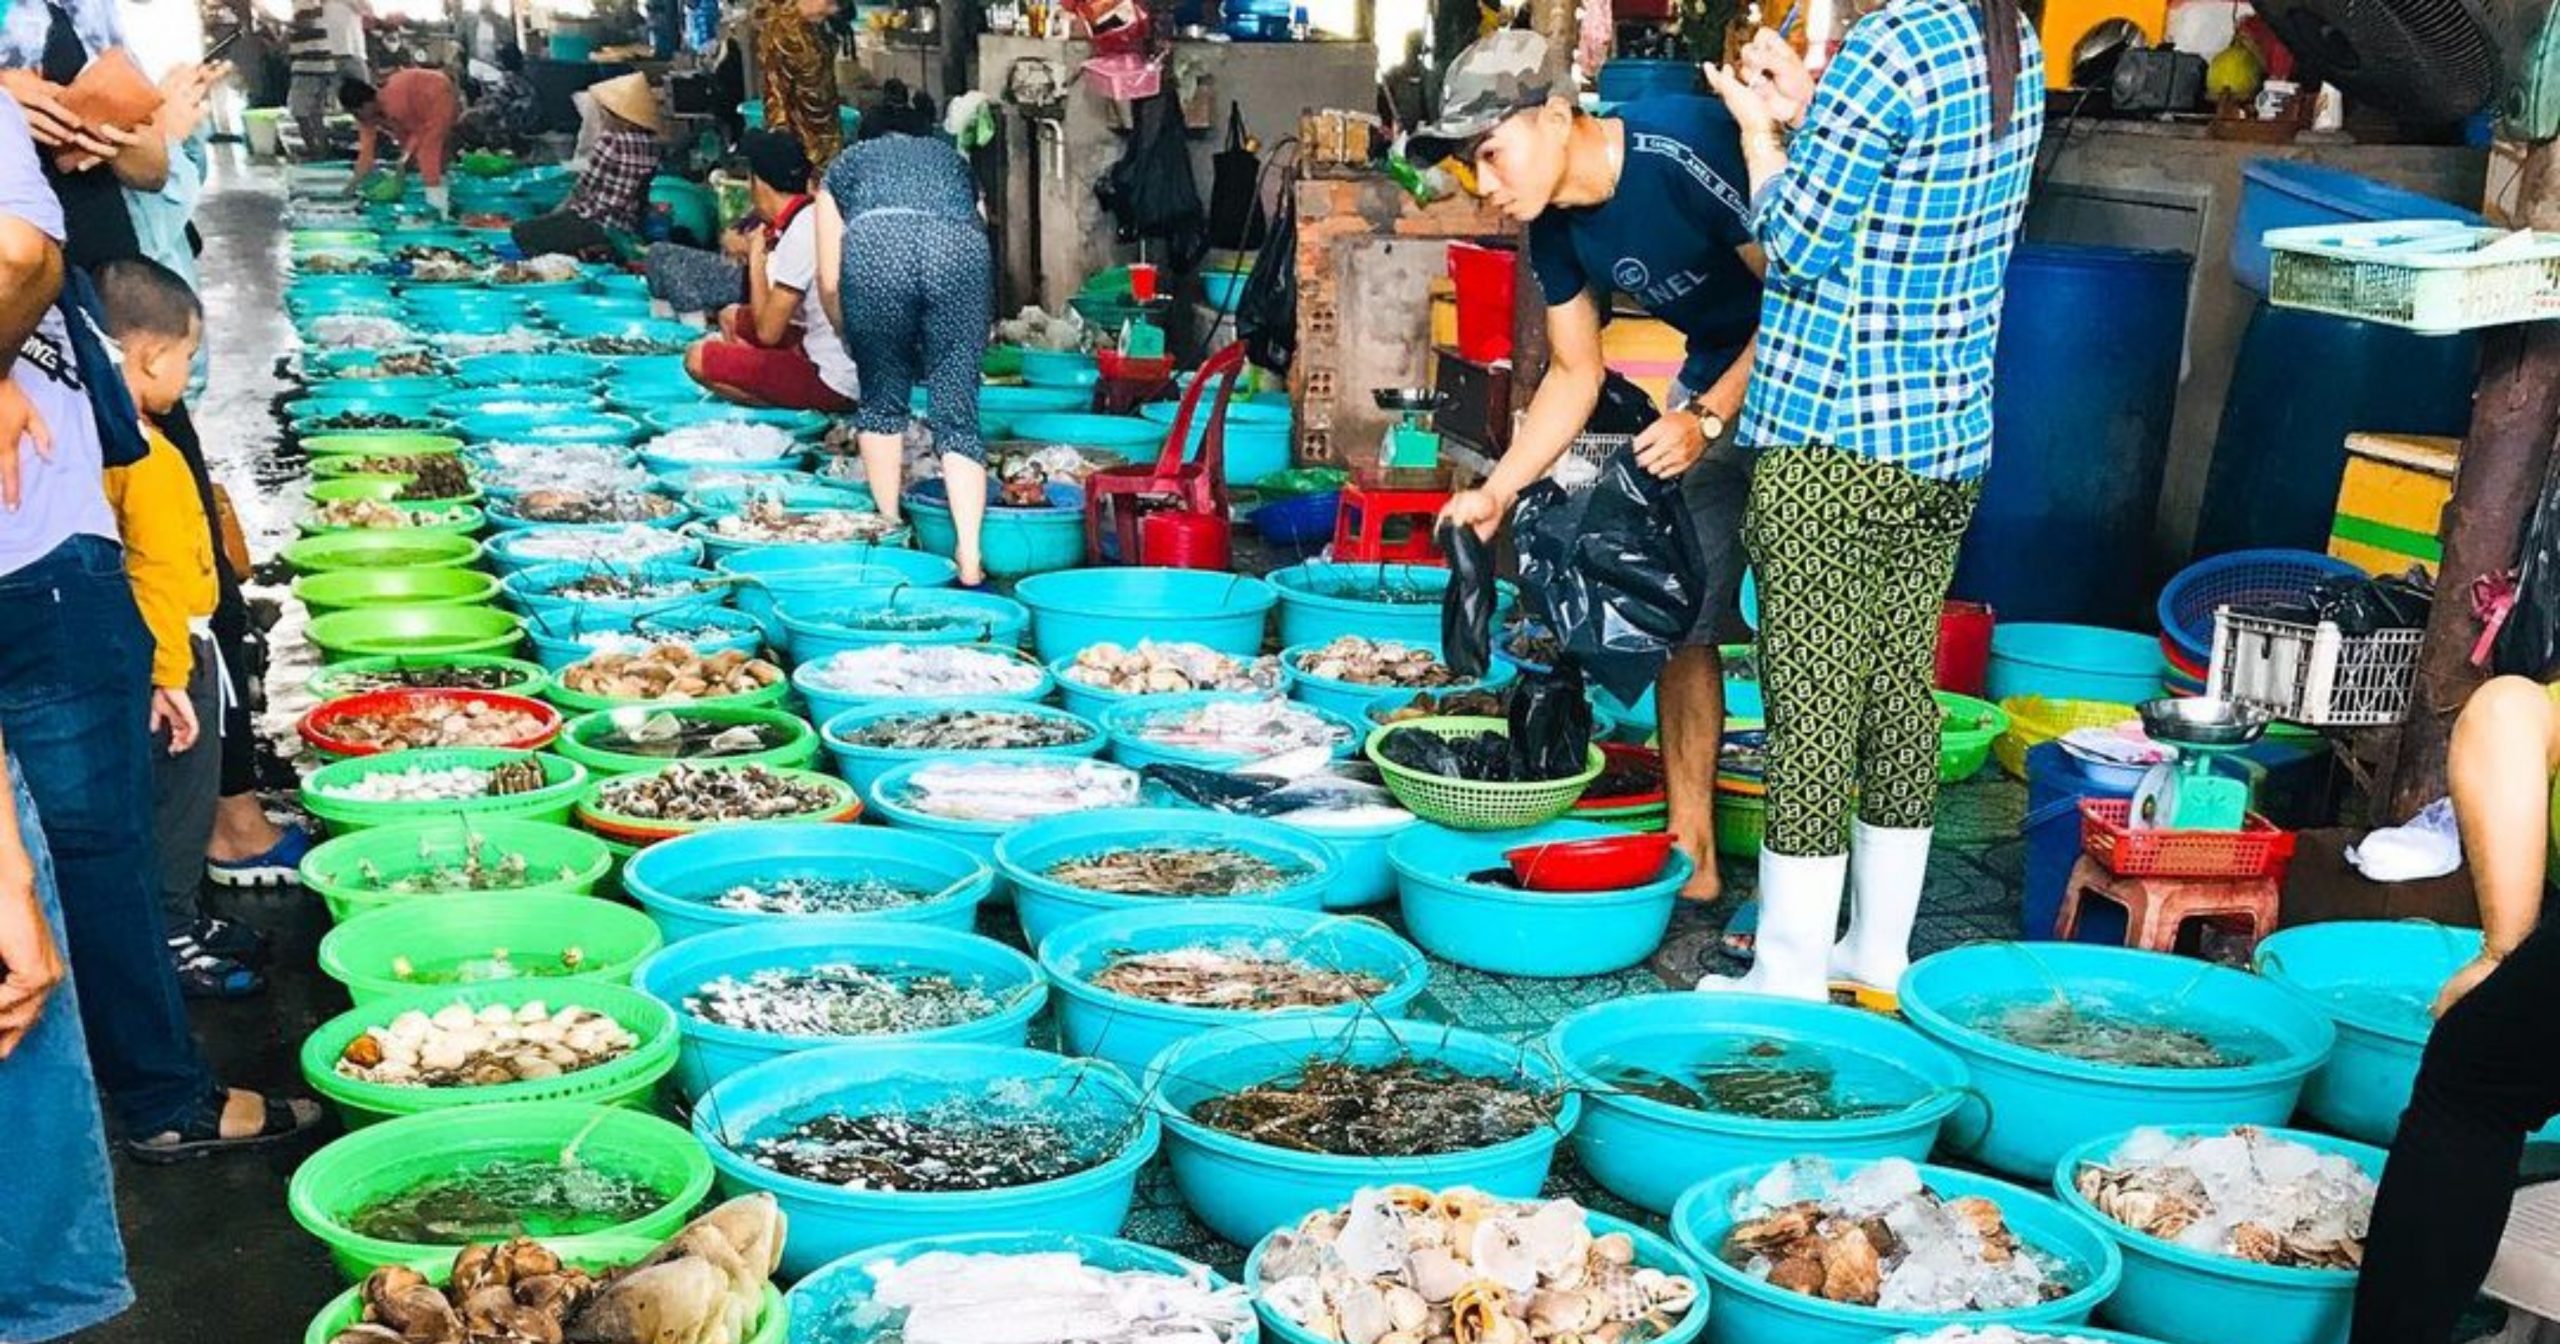 Chợ hải sản Hàng Dương